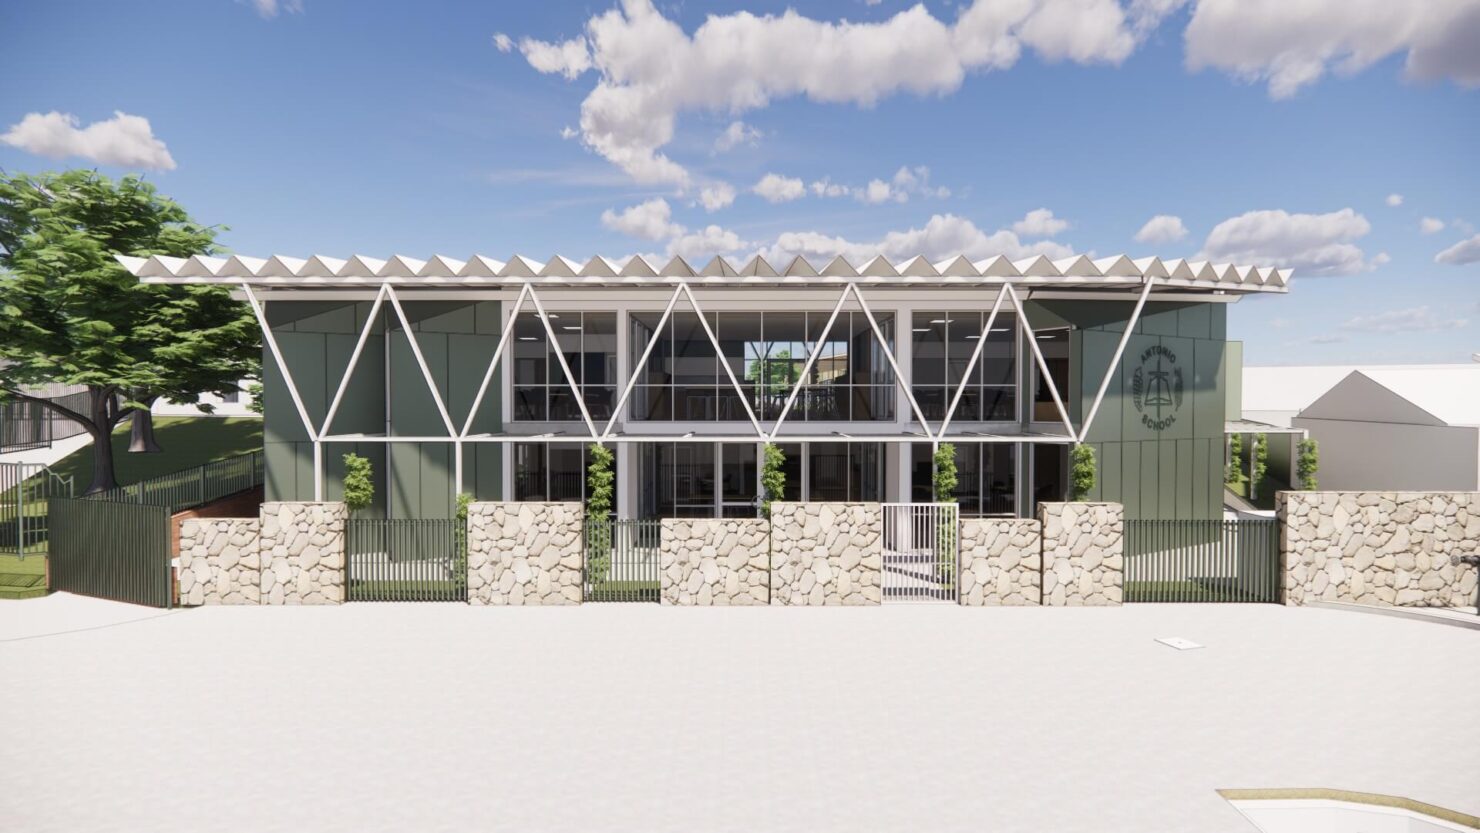 Antonio School's proposed new administration building. (Render: R&Y)<br />
<br />
